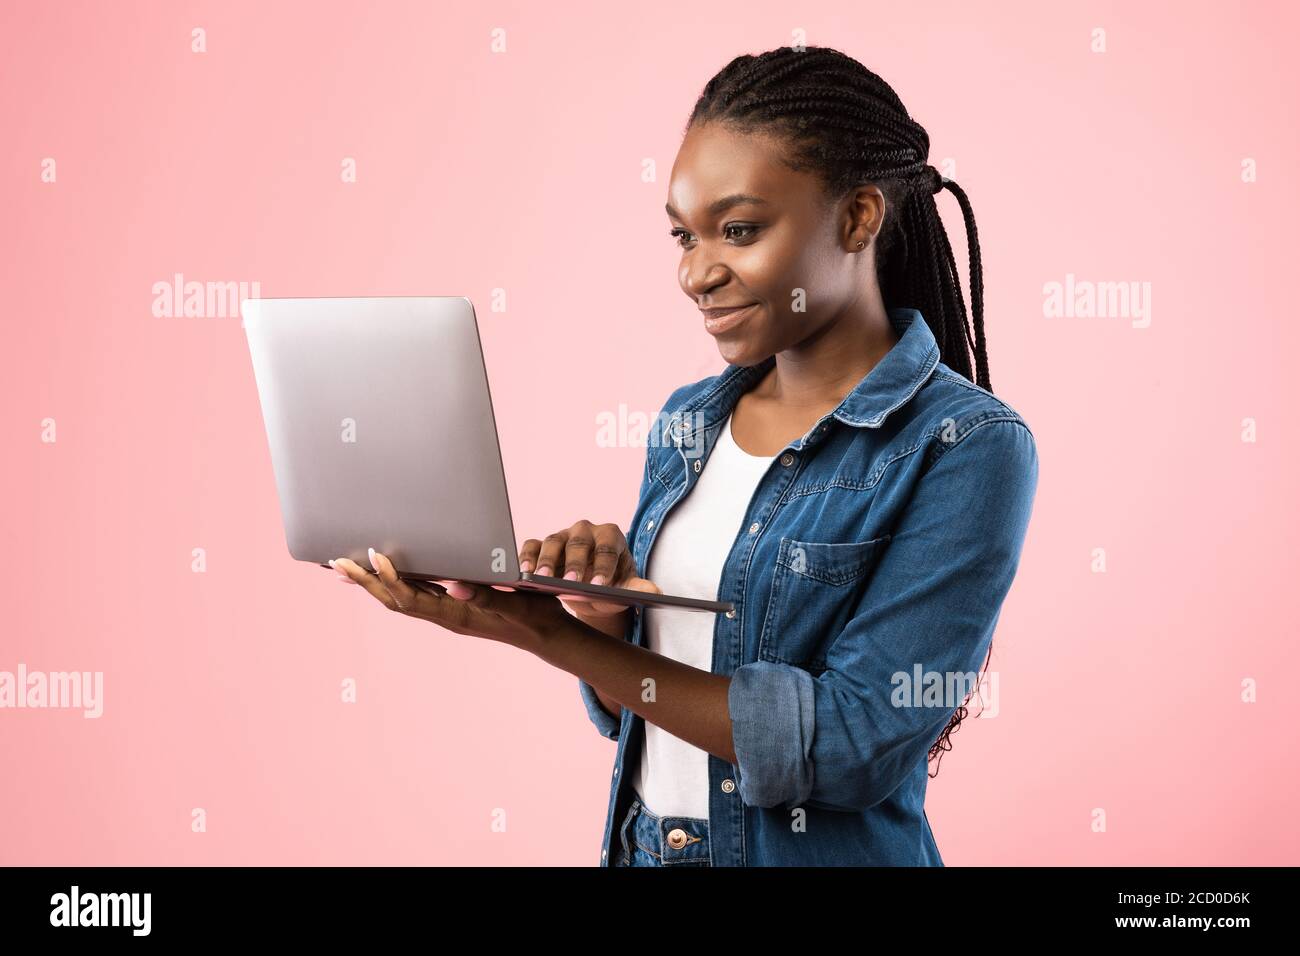 Fille étudiante noire tenant ordinateur portable debout sur fond rose Banque D'Images